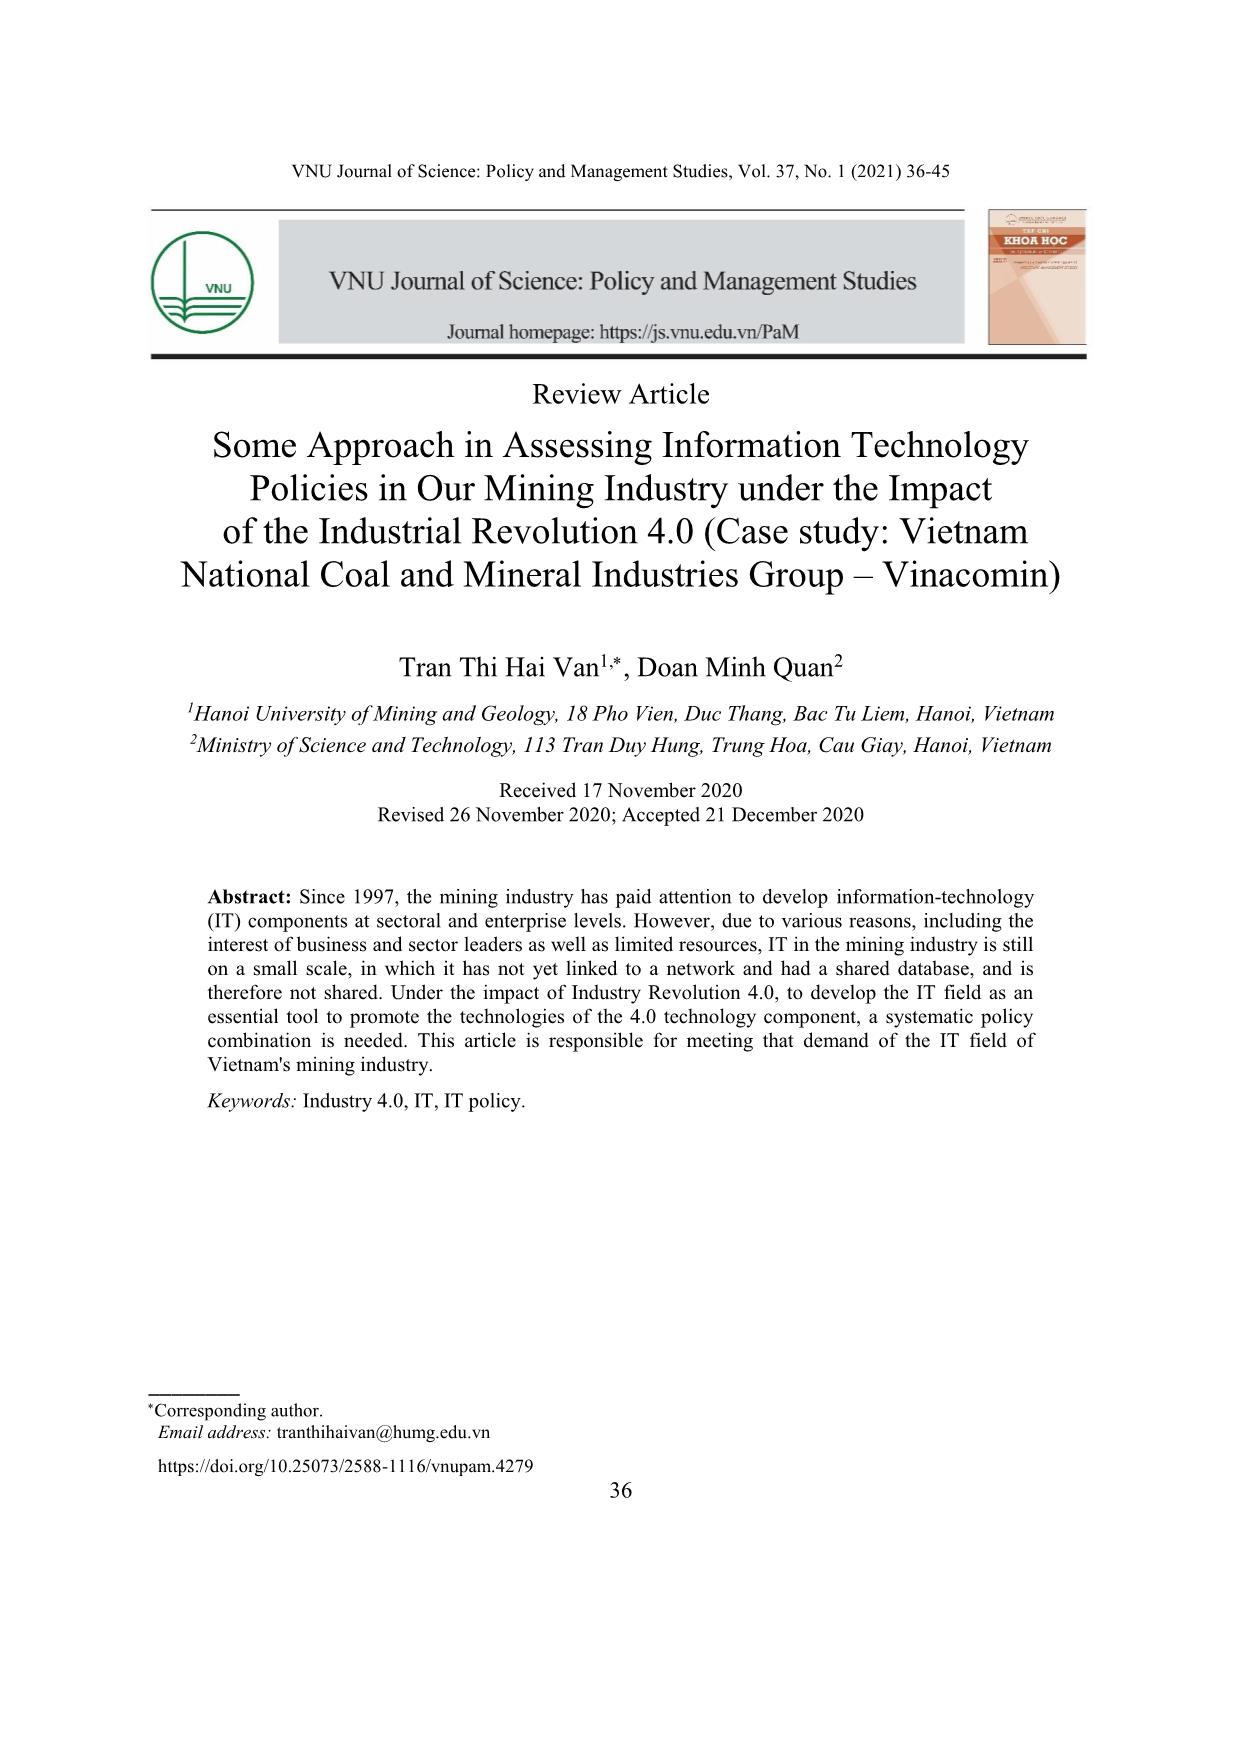 Một số tiếp cận trong đánh giá chính sách công nghệ thông tin ngành mỏ nước ta dưới tác động của cách mạng công nghiệp 4.0 (Nghiên cứu trường hợp: Tập đoàn Công nghiệp Than – Khoáng sản Việt Nam) trang 1